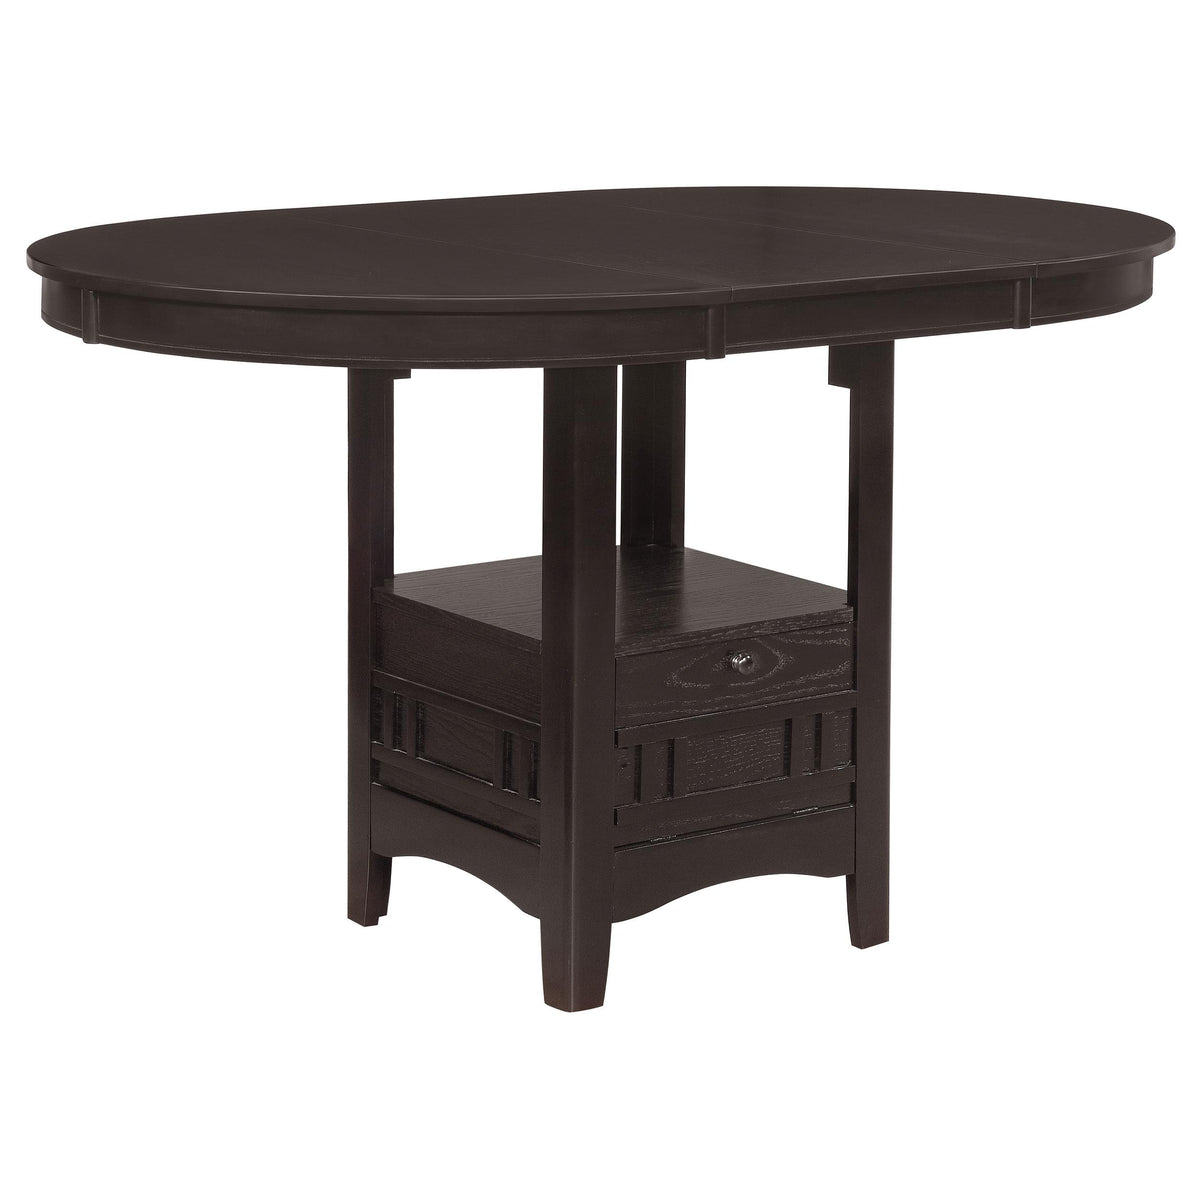 Lavon Oval Counter Height Table Espresso Lavon Oval Counter Height Table Espresso Half Price Furniture